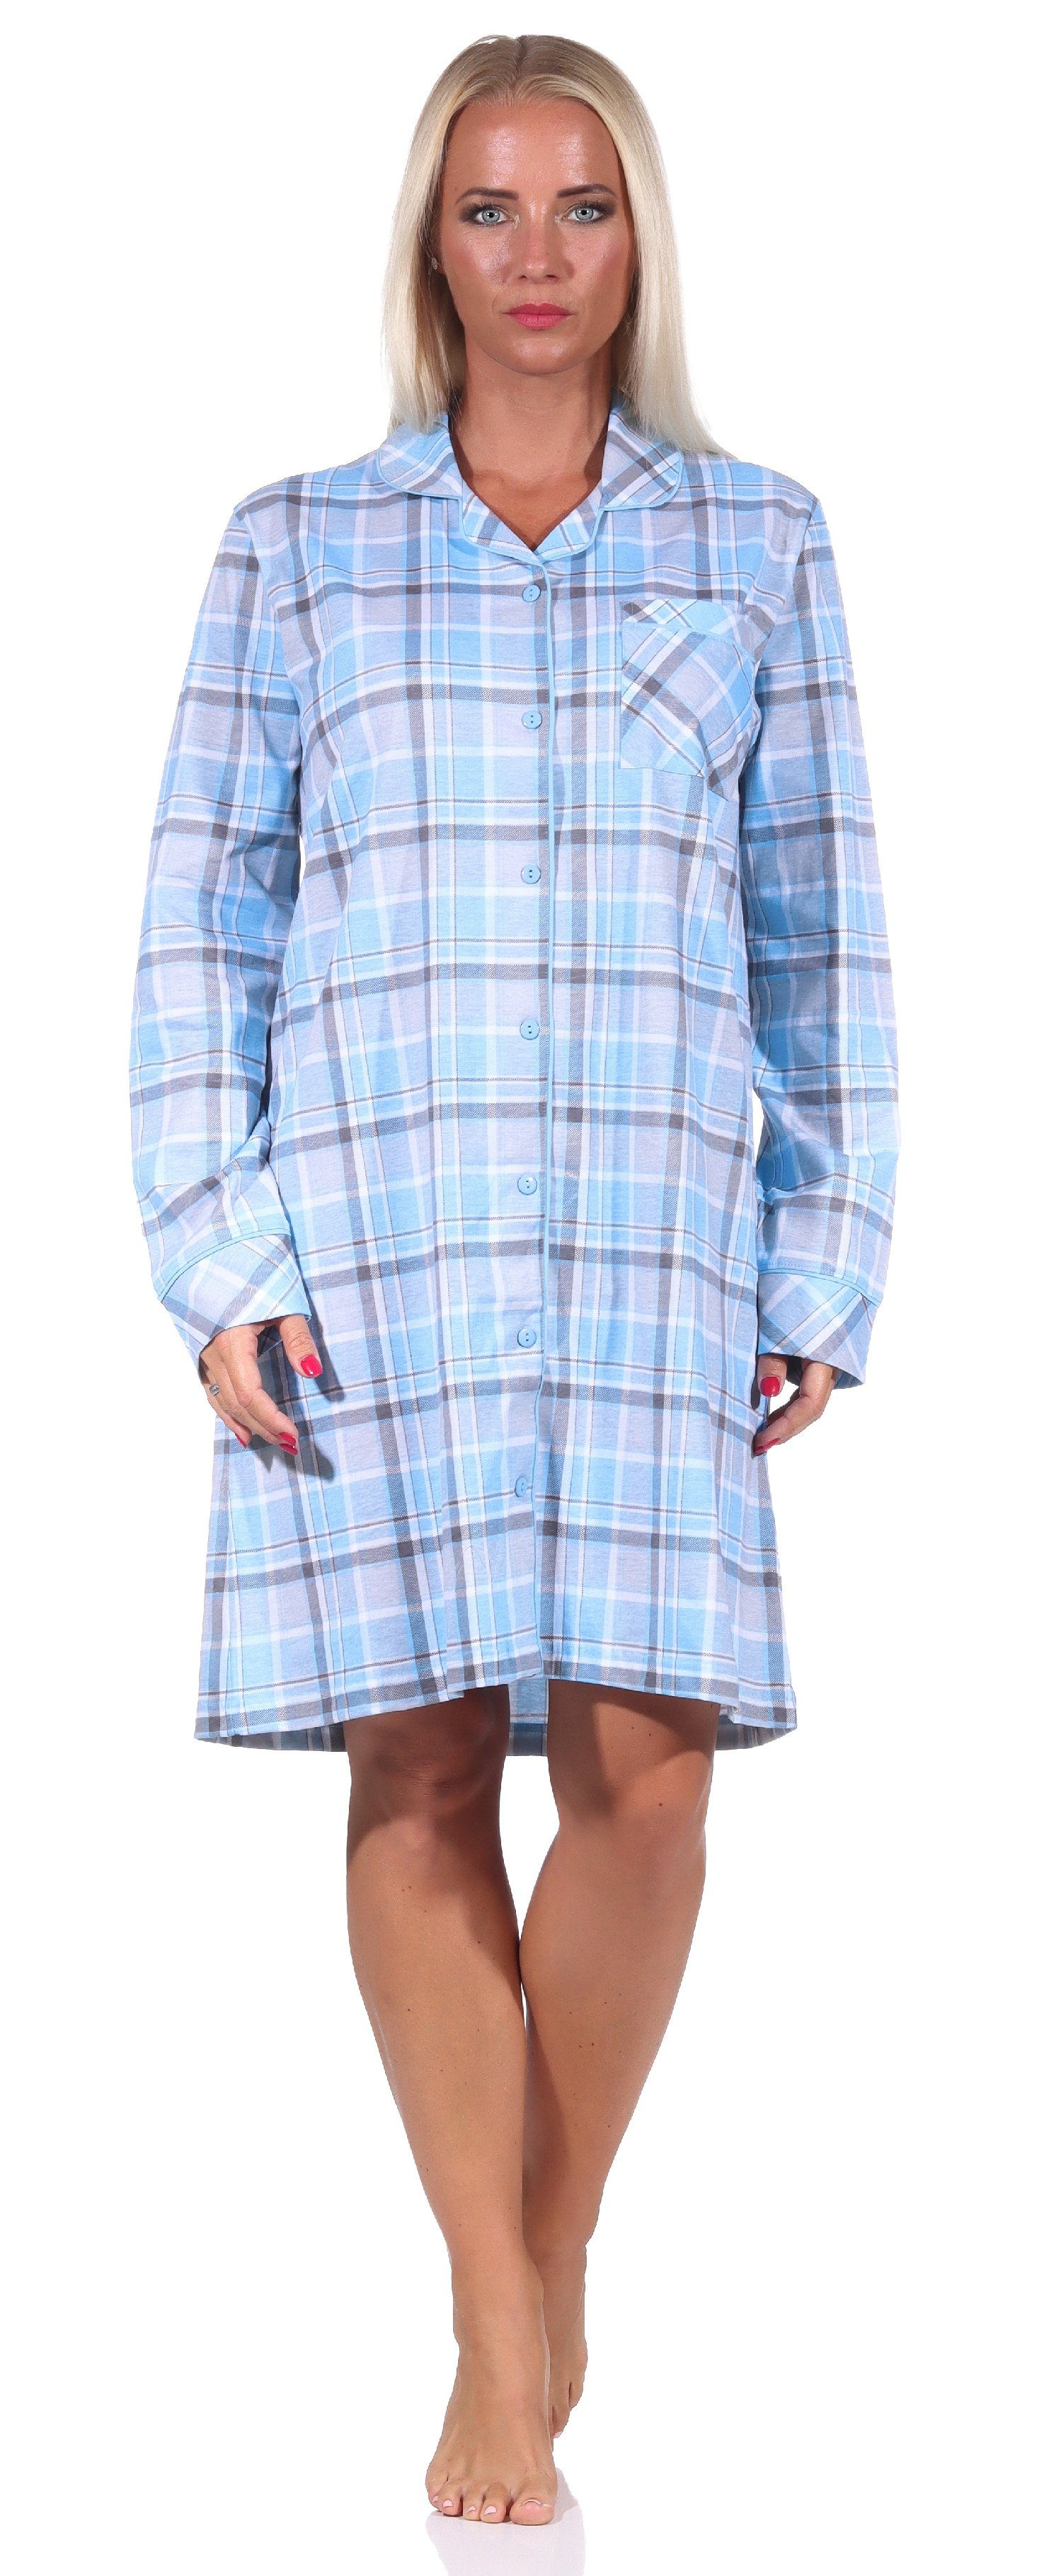 Qualität knöpfen Nachthemd Normann in Karopotik Jersey langarm hellblau Nachthemd zum Damen in